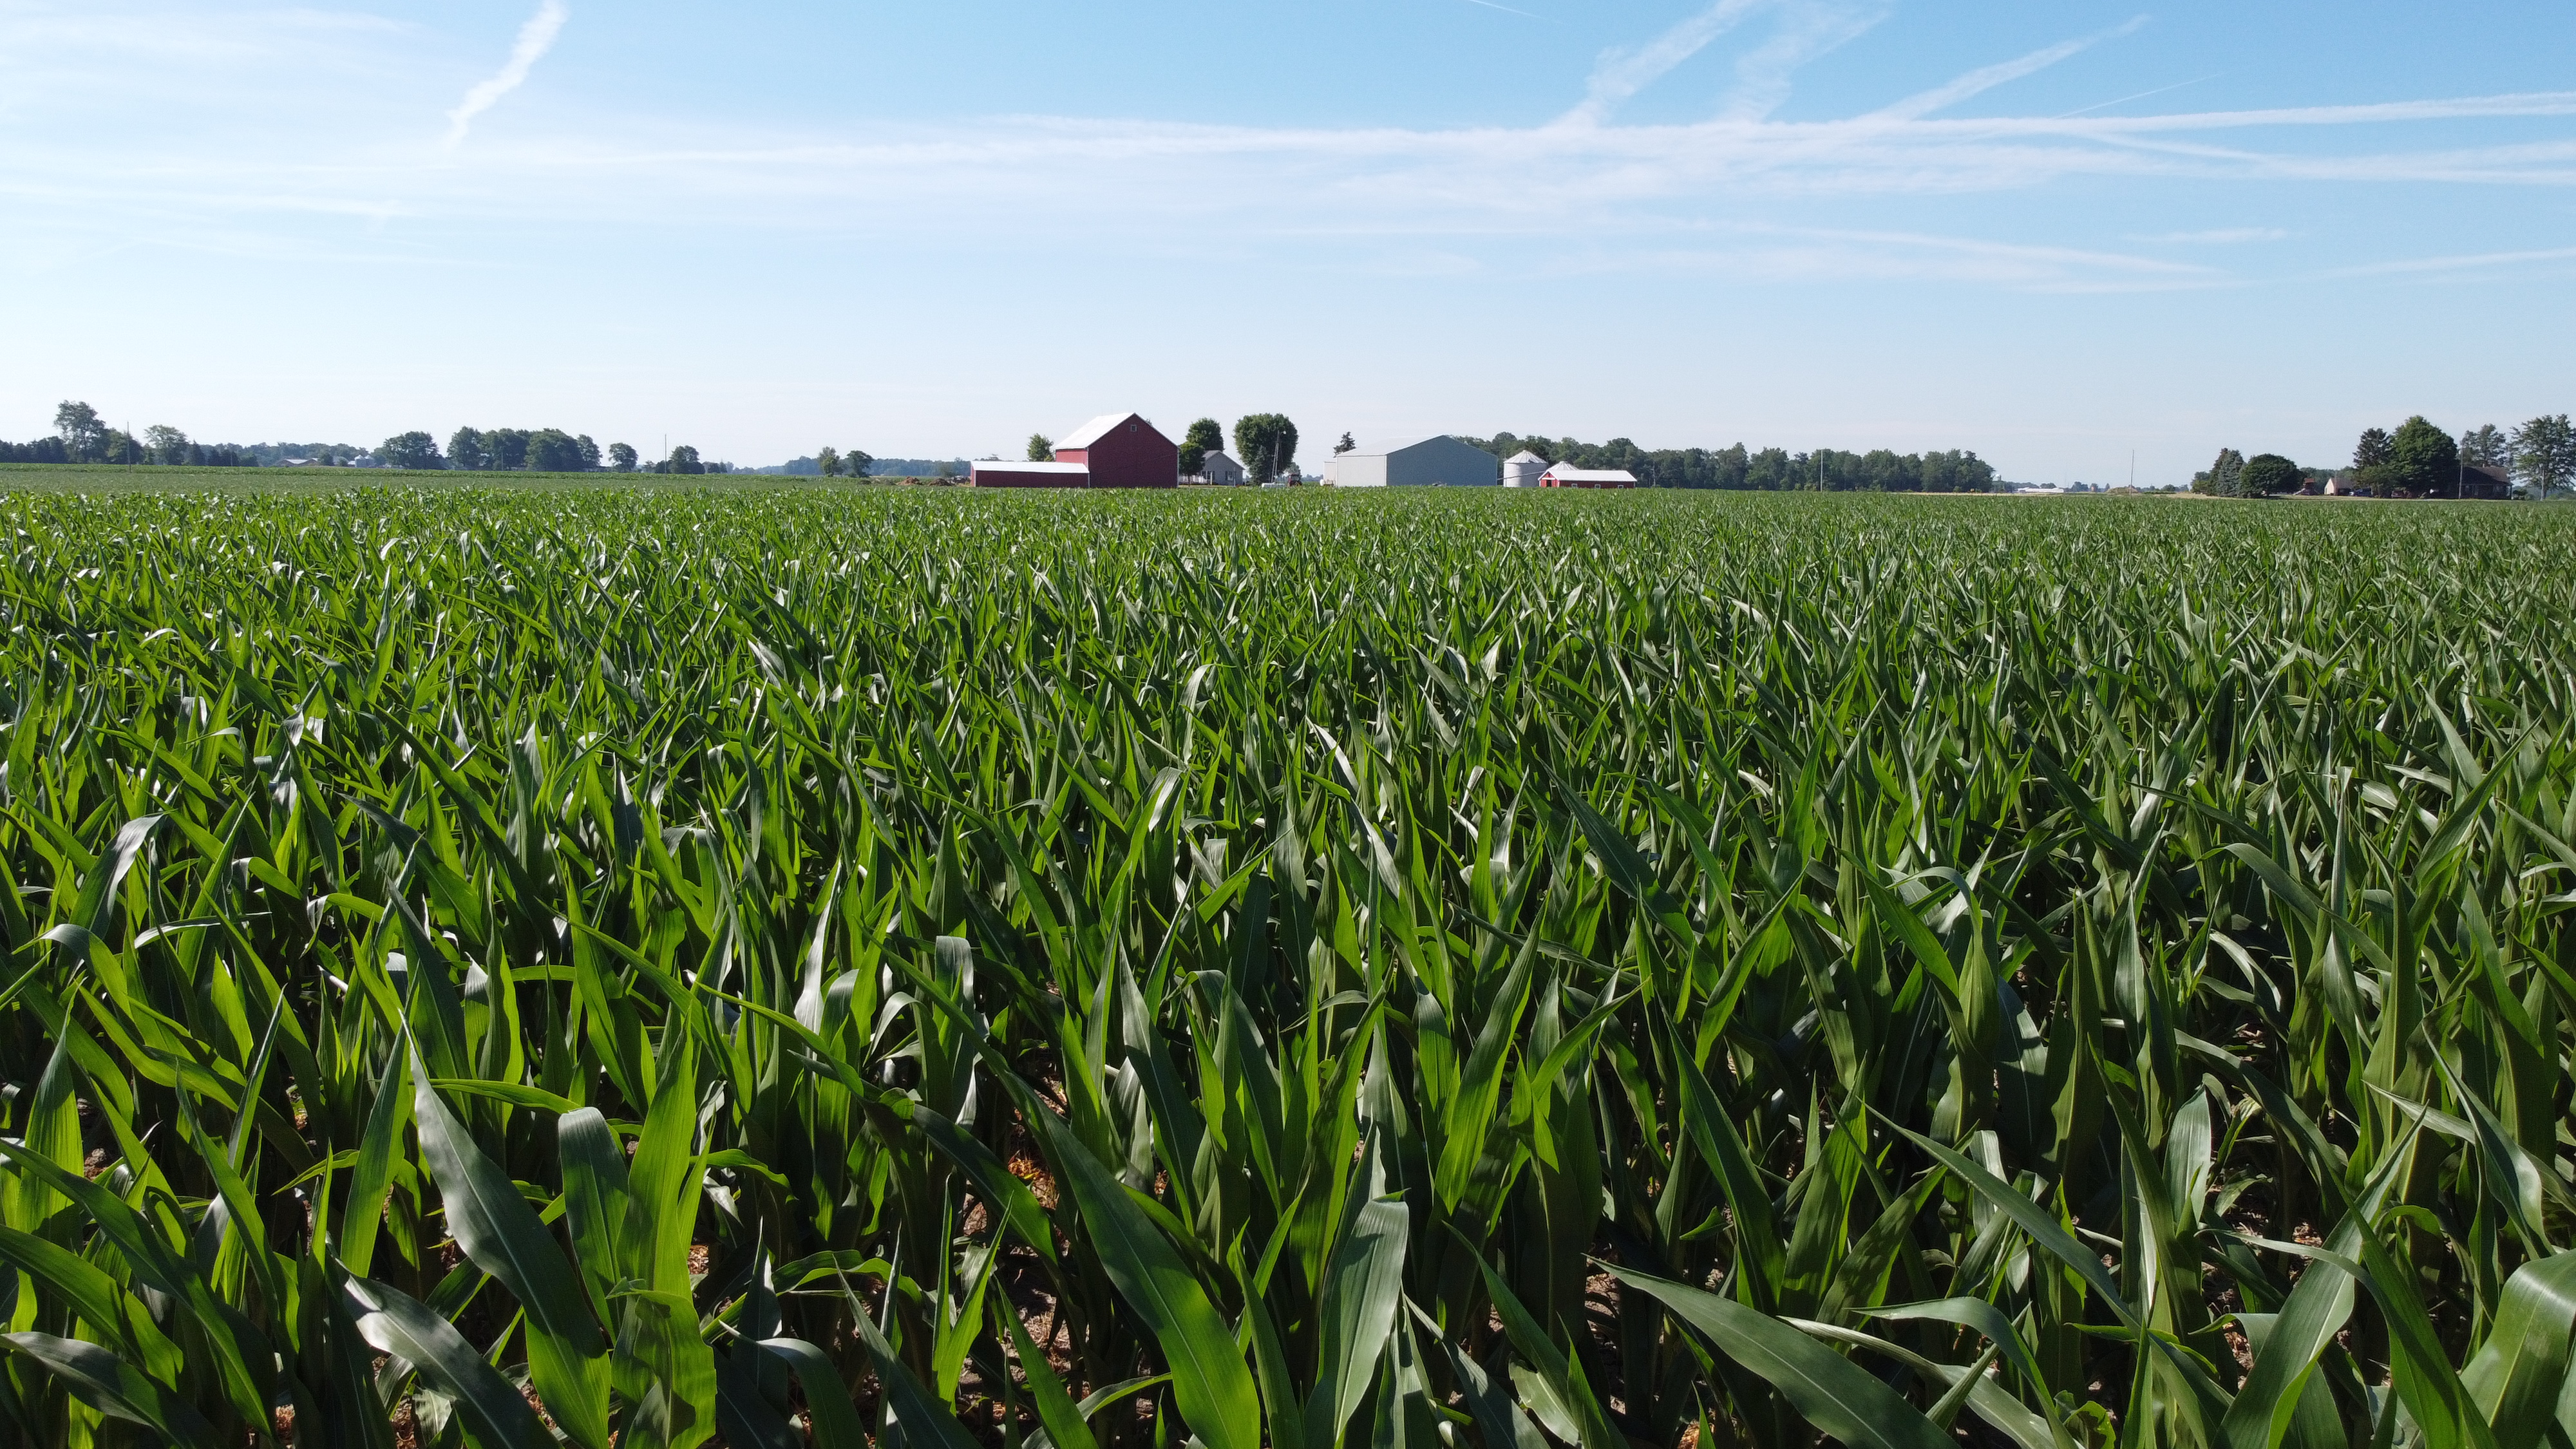 Corn field, farm, red barn, barnyard